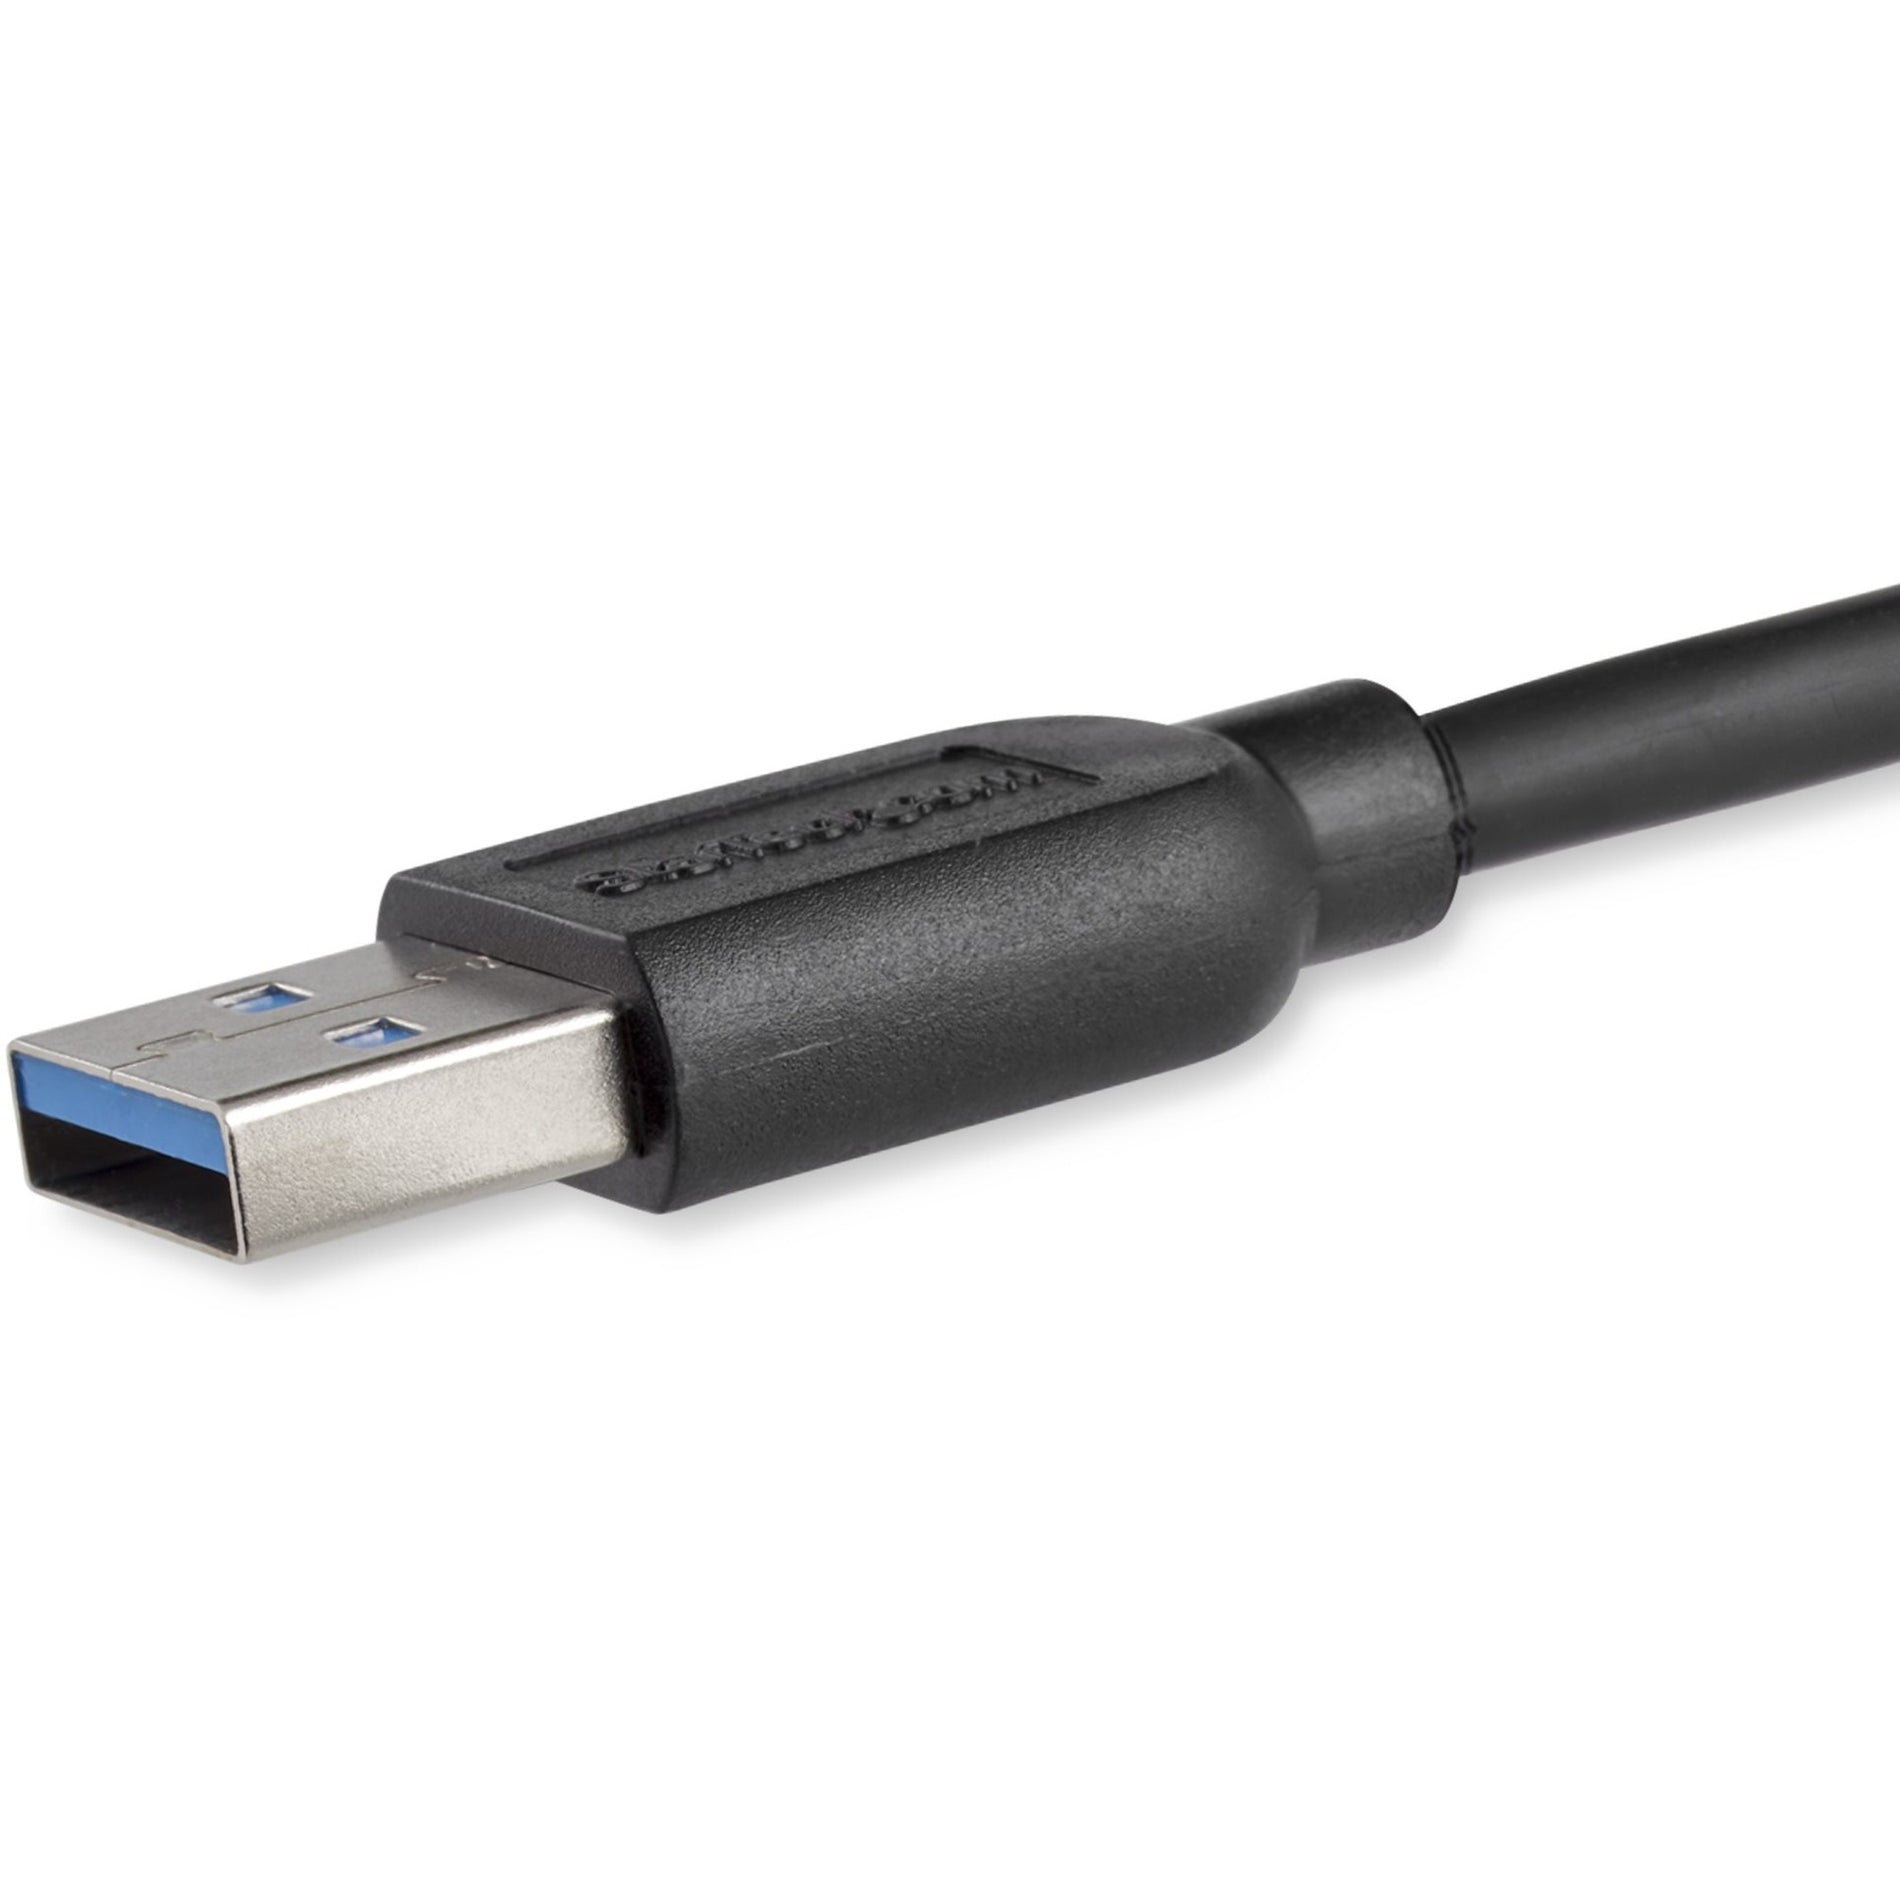 スタートレック・ドットコム USB3AUB2MS 2m (6ft) スリム スーパースピード USB 3.0 A から Micro B ケーブル - M/M 高速データ転送 柔軟で耐久性がある